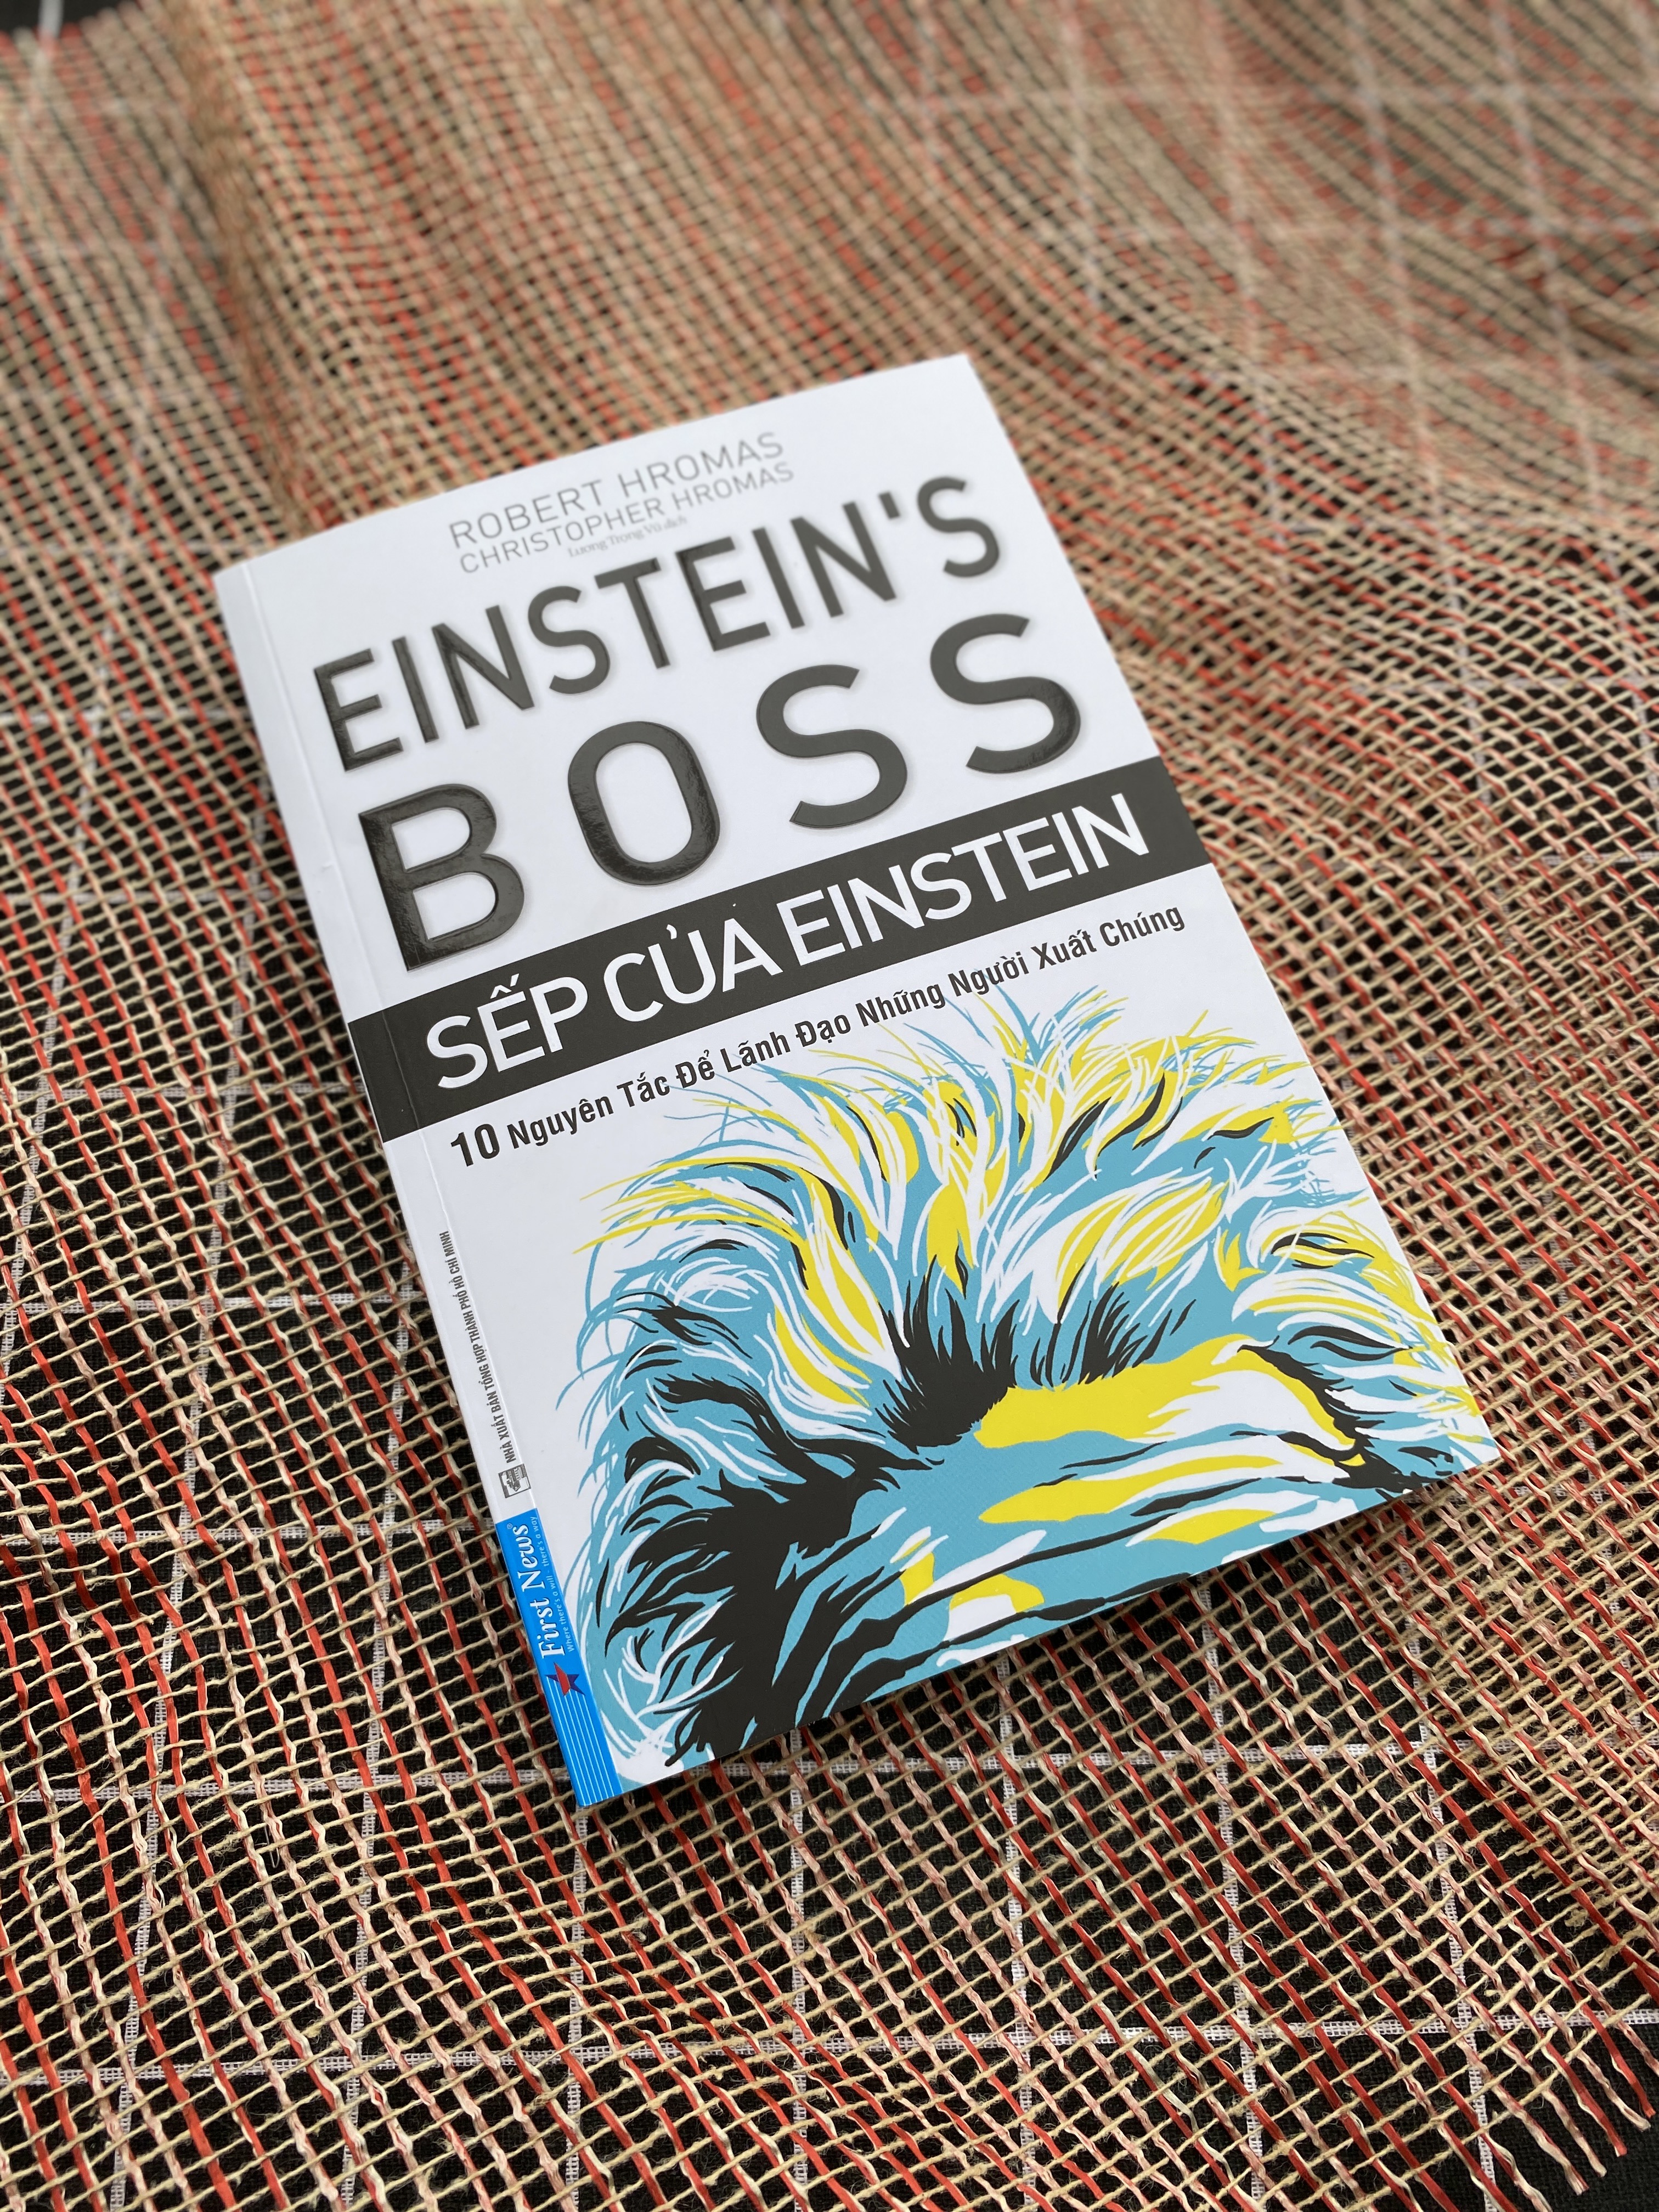 Sếp Của Einstein - 10 Nguyên Tắc Để Lãnh Đạo Những Người Xuất Chúng PDF